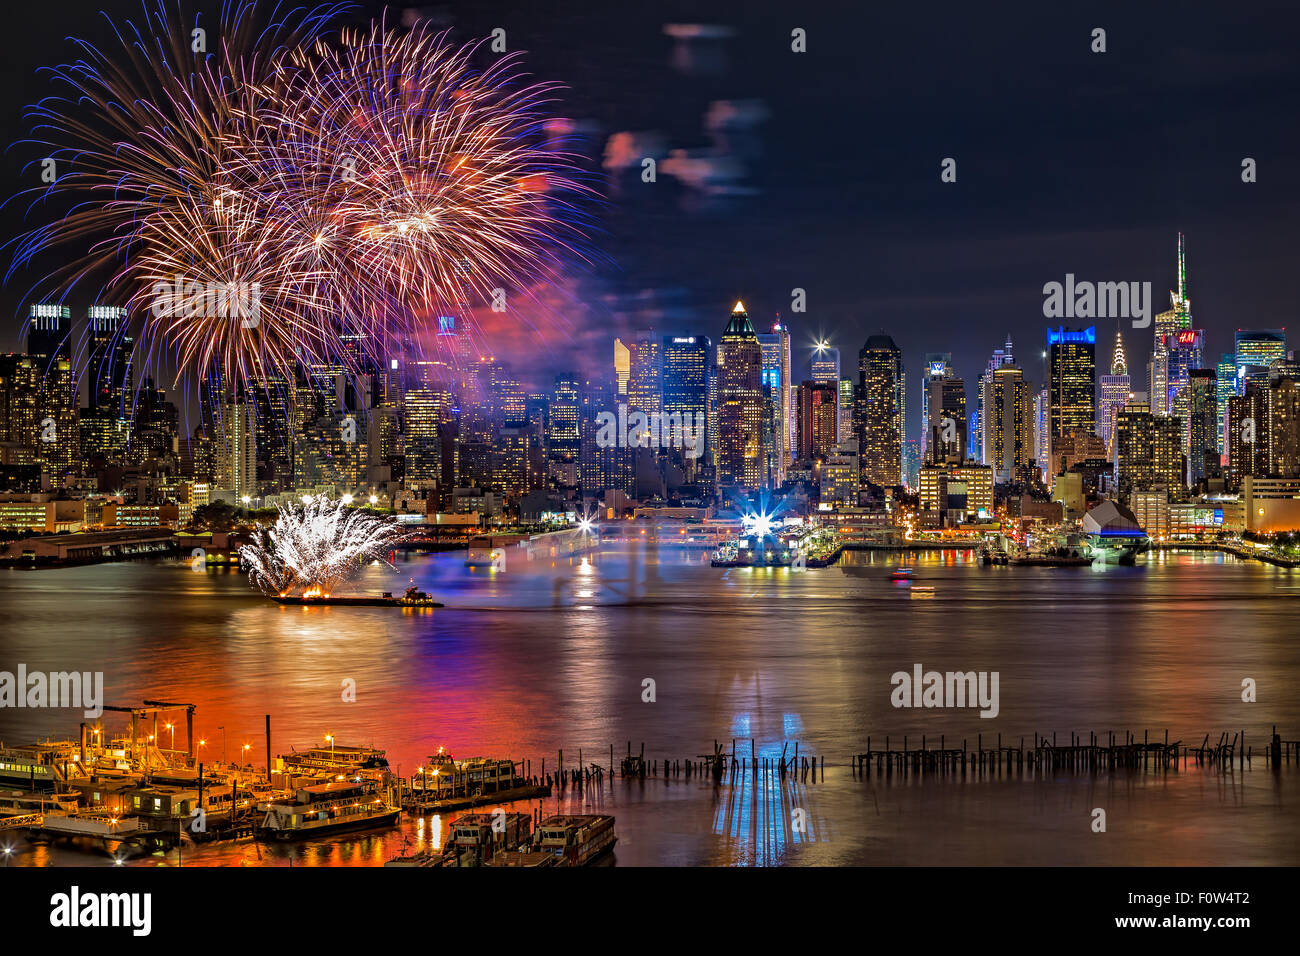 Manhattan NYC Verano fuegos artificiales - Fireworks display de verano celebración sobre el río Hudson en Manhattan, con los rascacielos iluminados en la Ciudad de Nueva York (NYC), Nueva York. Foto de stock